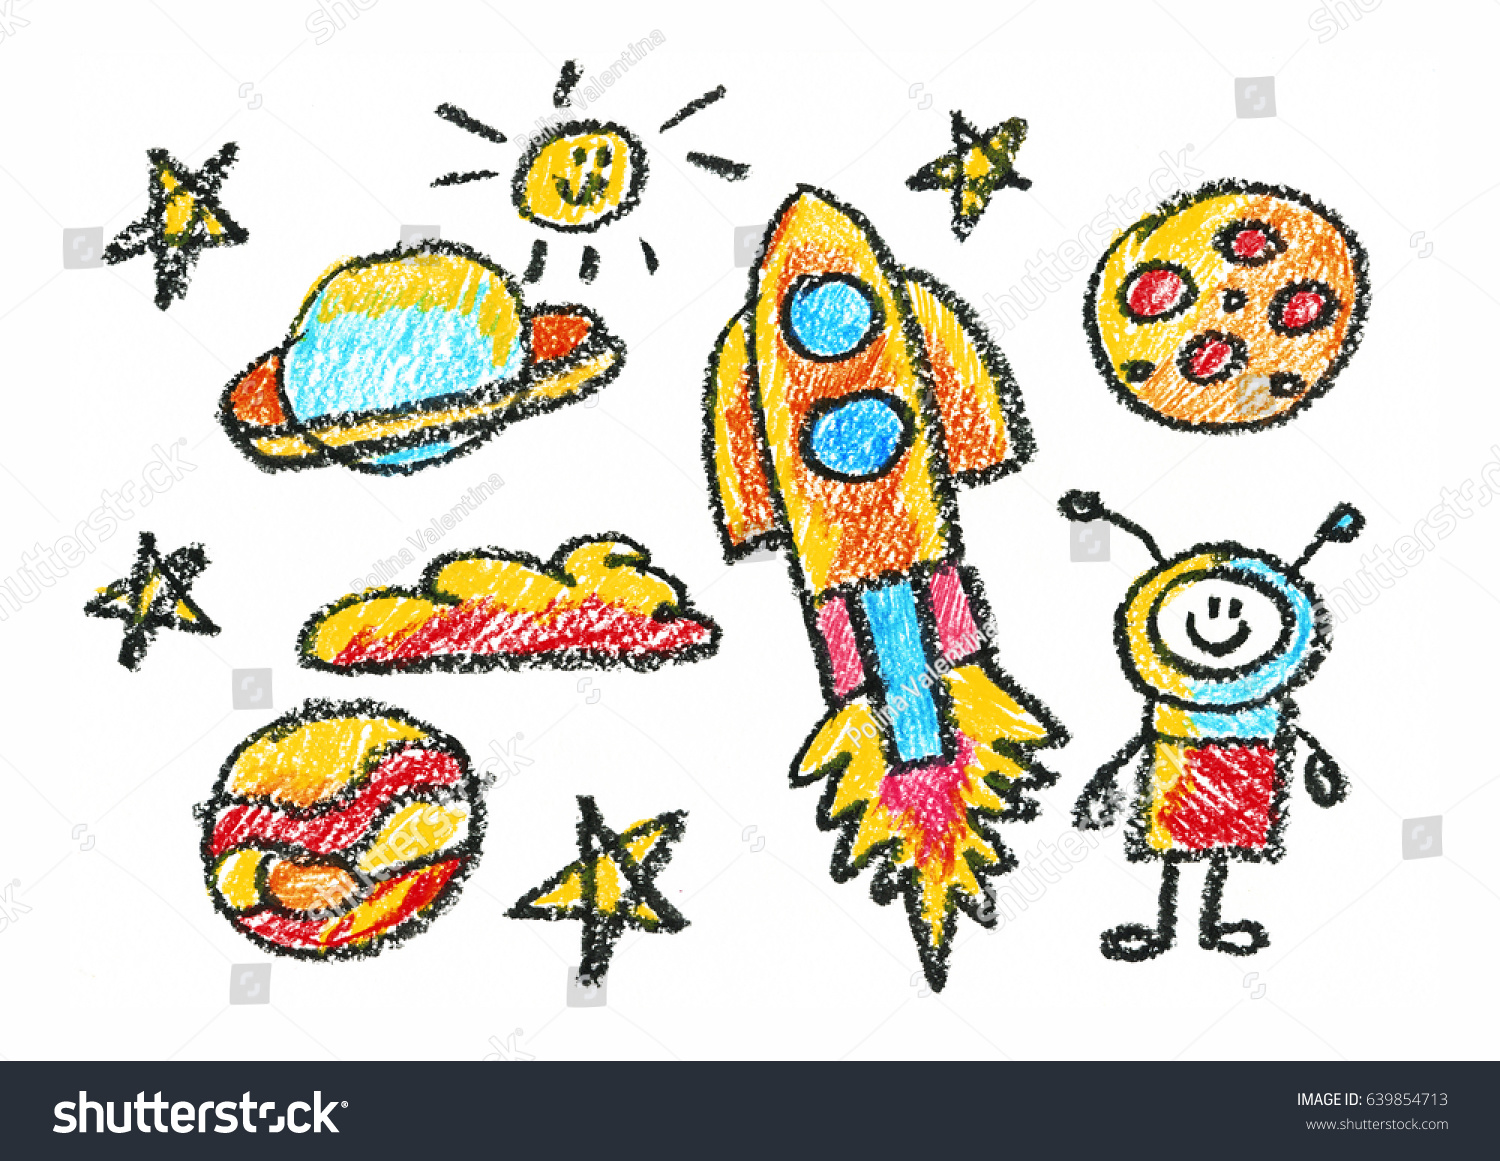 宇宙人の子どもを描く子どもたち教育 学校 幼稚園児の遊びの勉強 男の子と女の子を学ぶ のイラスト素材